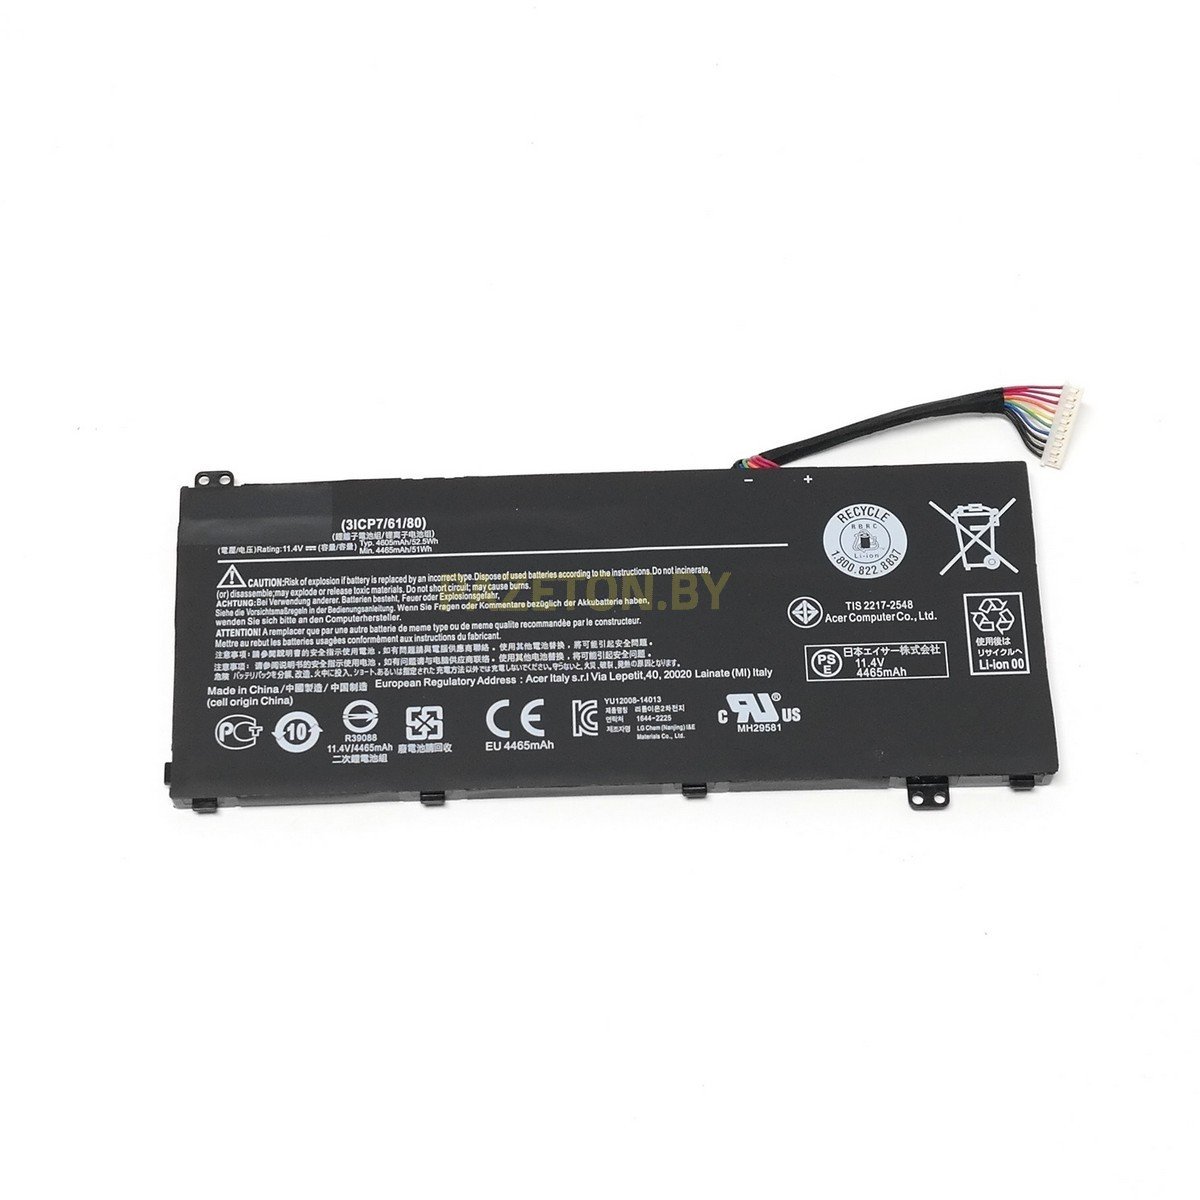 Батарея AC14A8L 11.4V 52.5Wh для Acer Acer V15 Nitro Aspire VN7-571 VN7-591 VN7-571G VN7-791G VN7-791 и других